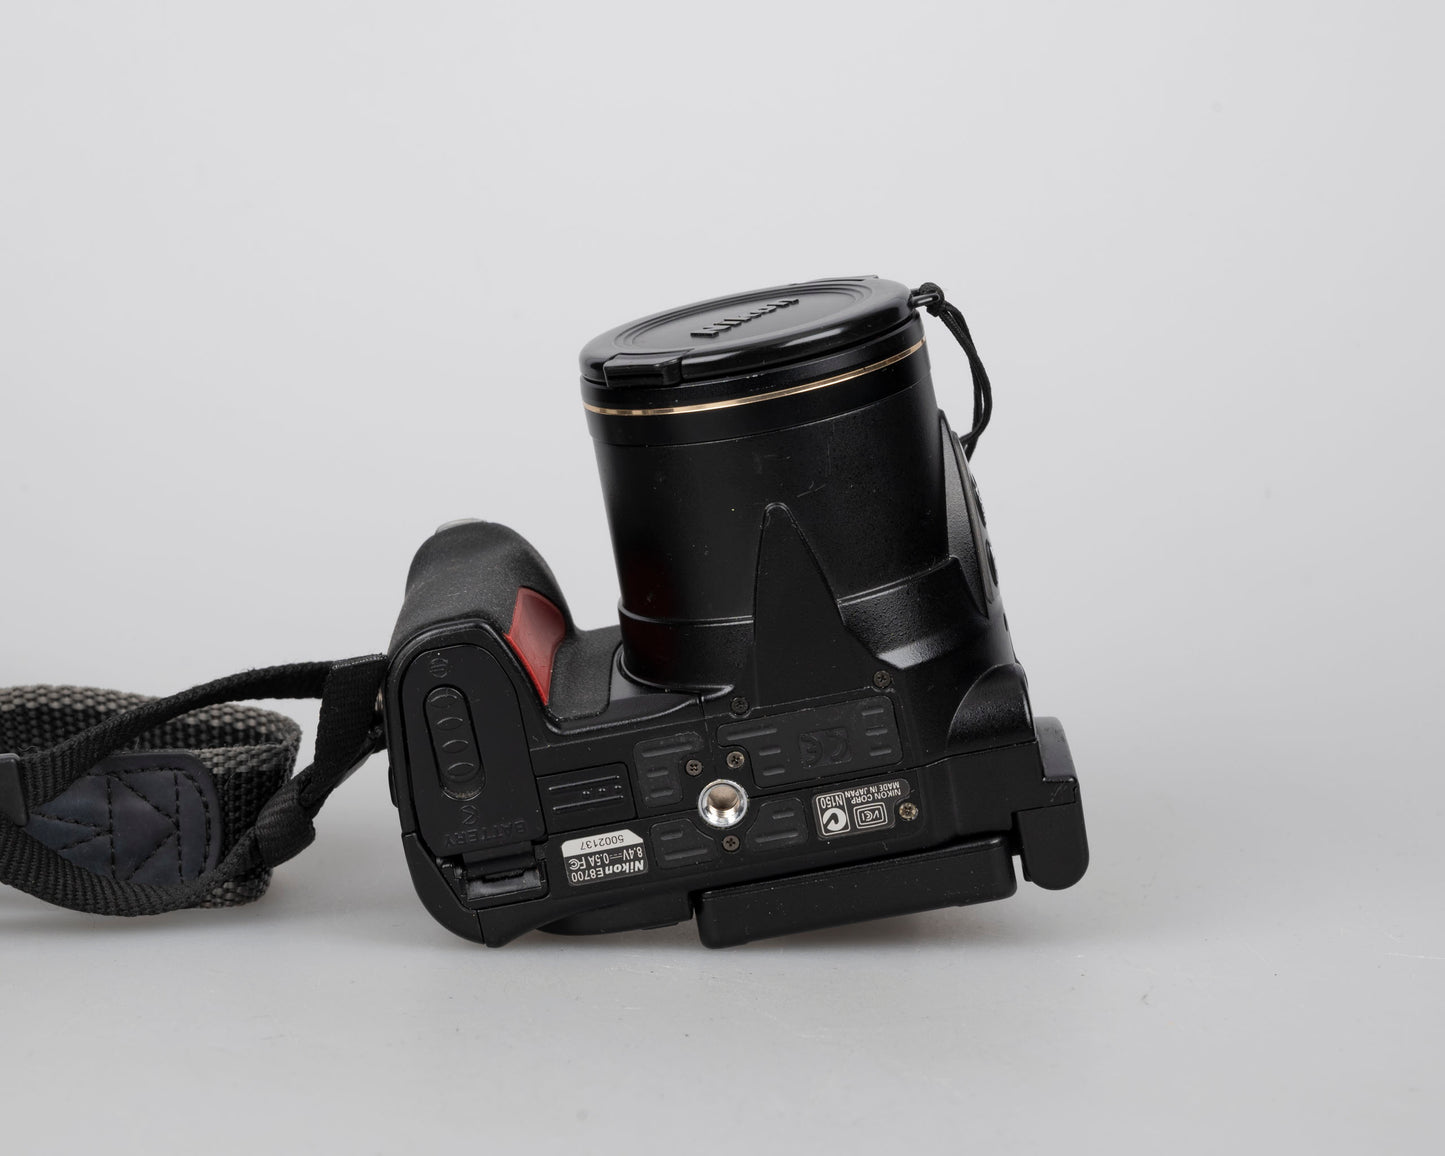 Appareil photo numérique à capteur CCD Nikon Coolpix 8700 8MP avec chargeur + batterie + carte CF 512 Mo